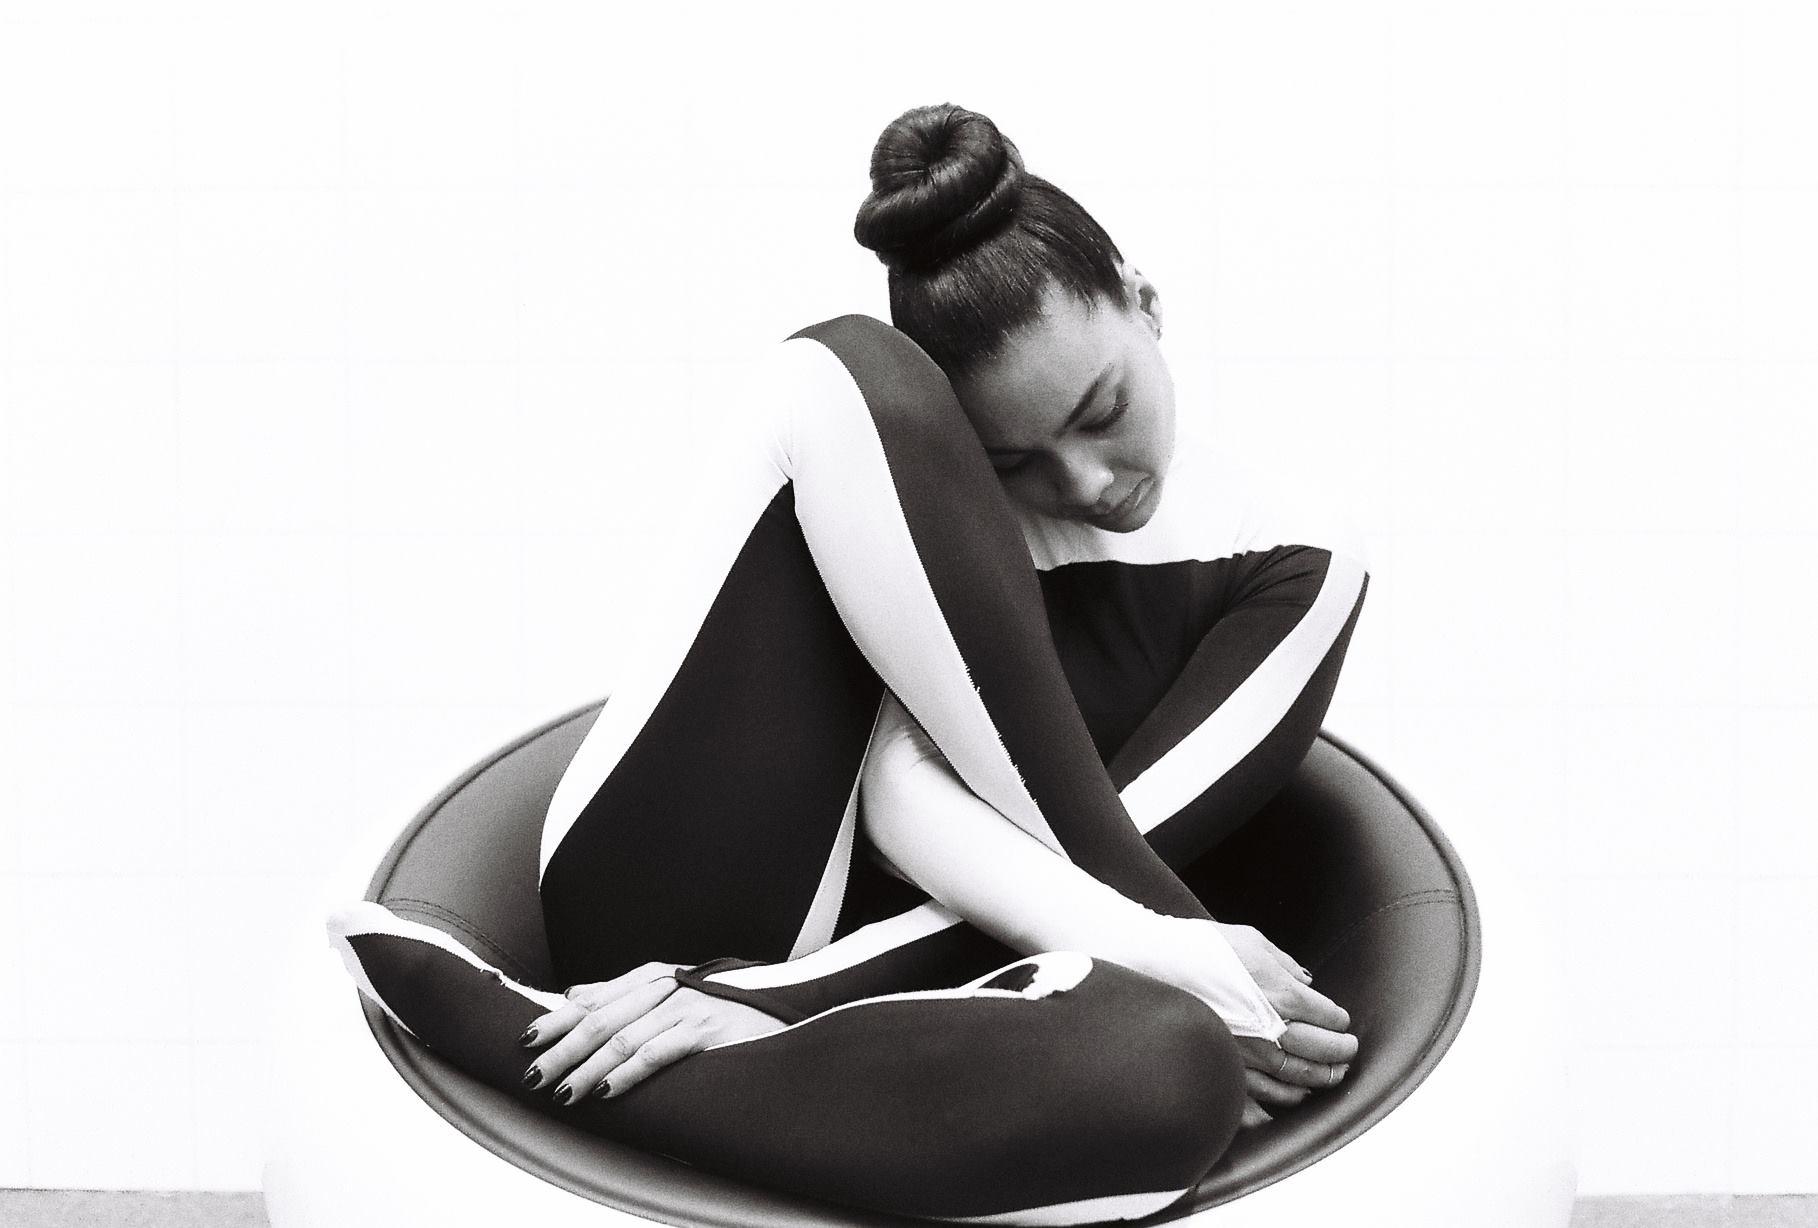 La danseuse pose en costume de scène noir et blanc sur un siège des années 60 pour une photographie argentique.